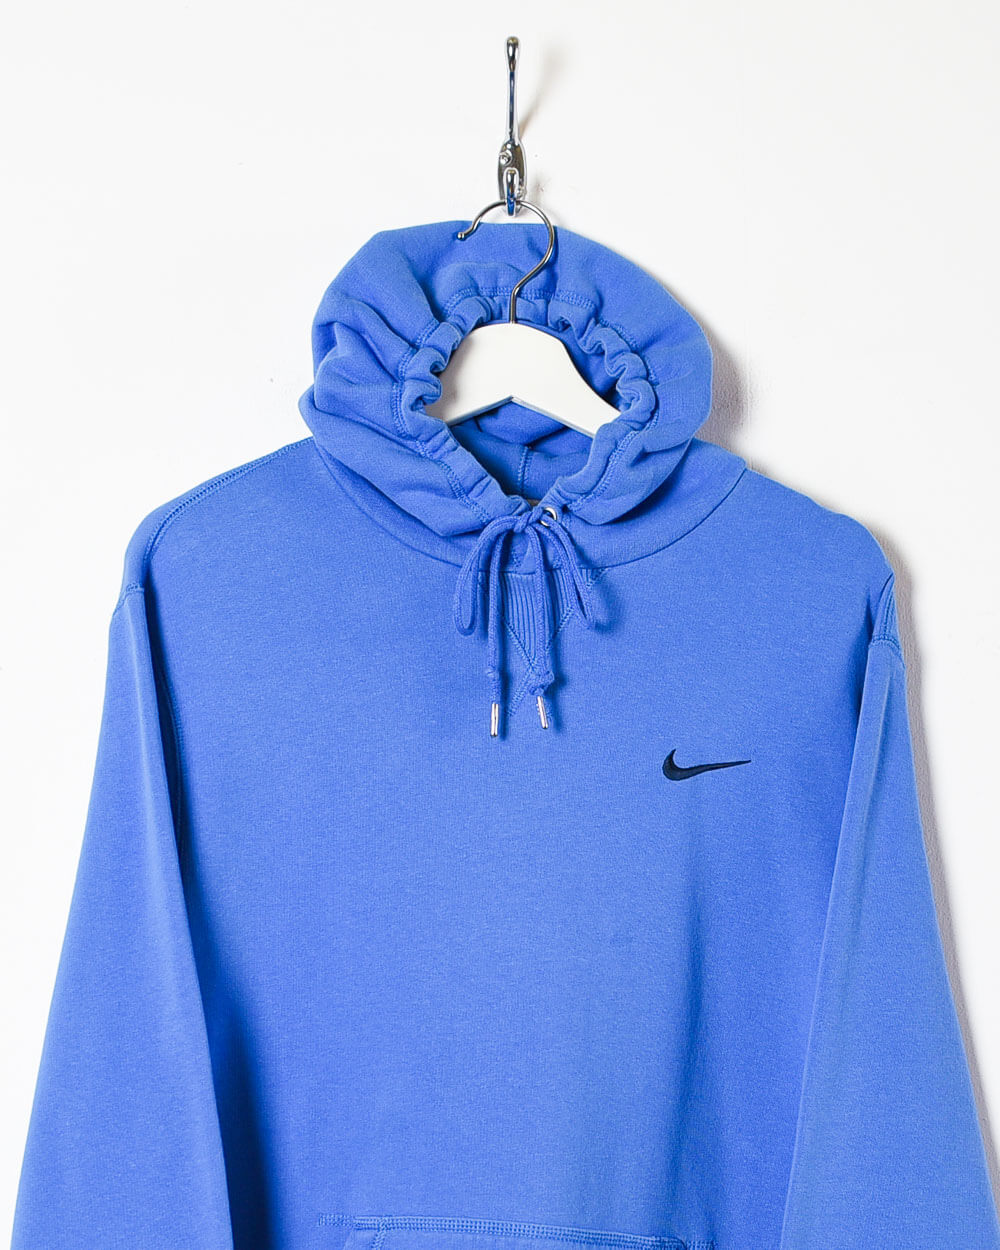 Blue Nike Hoodie - Large